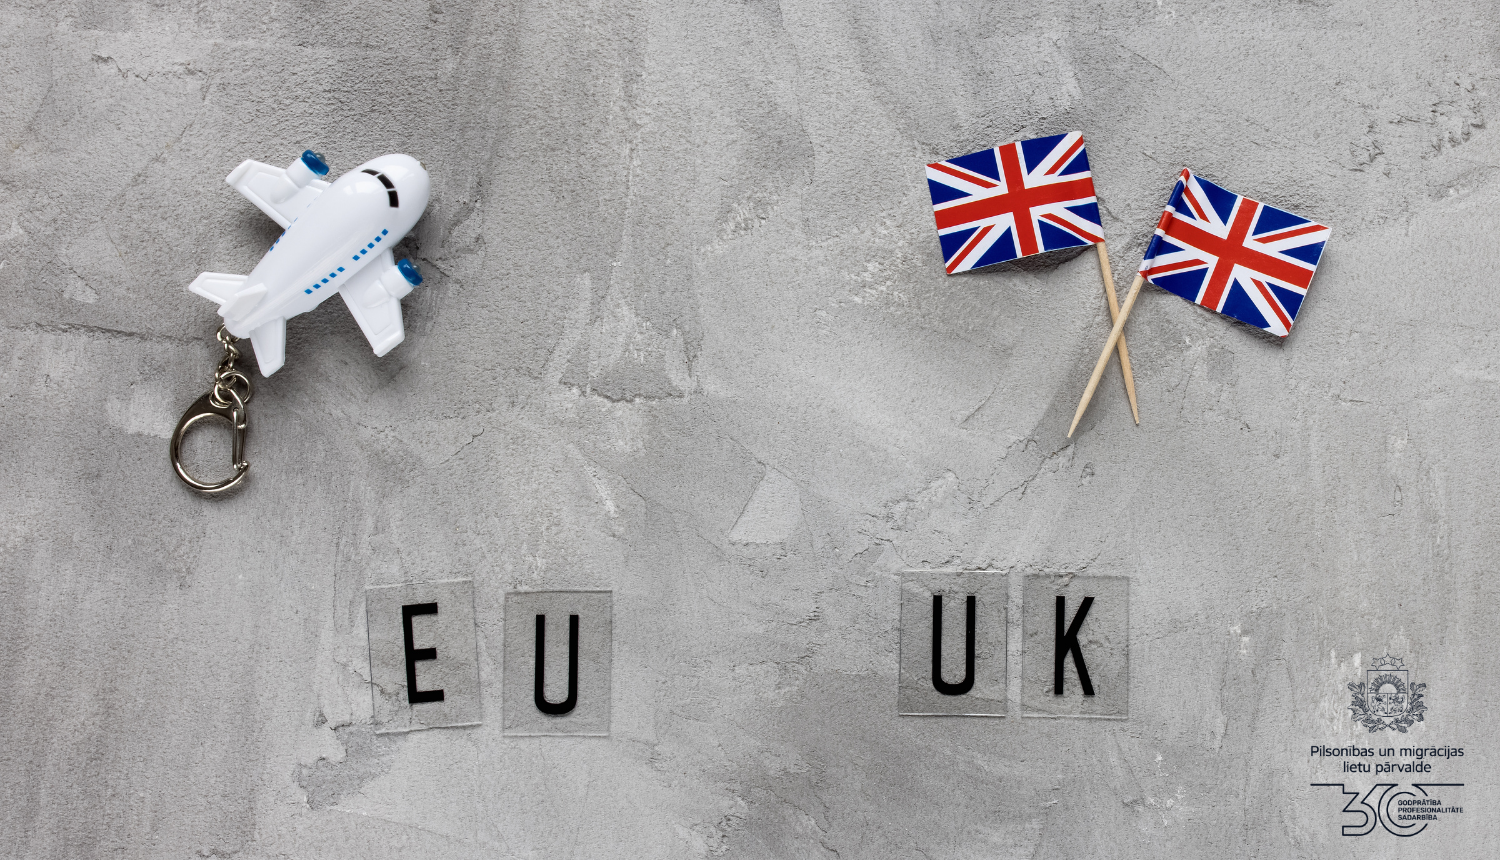 Maza lidmašīna un mazie UK karodziņi uz alda ar uzrakstiem "EU" un "UK"